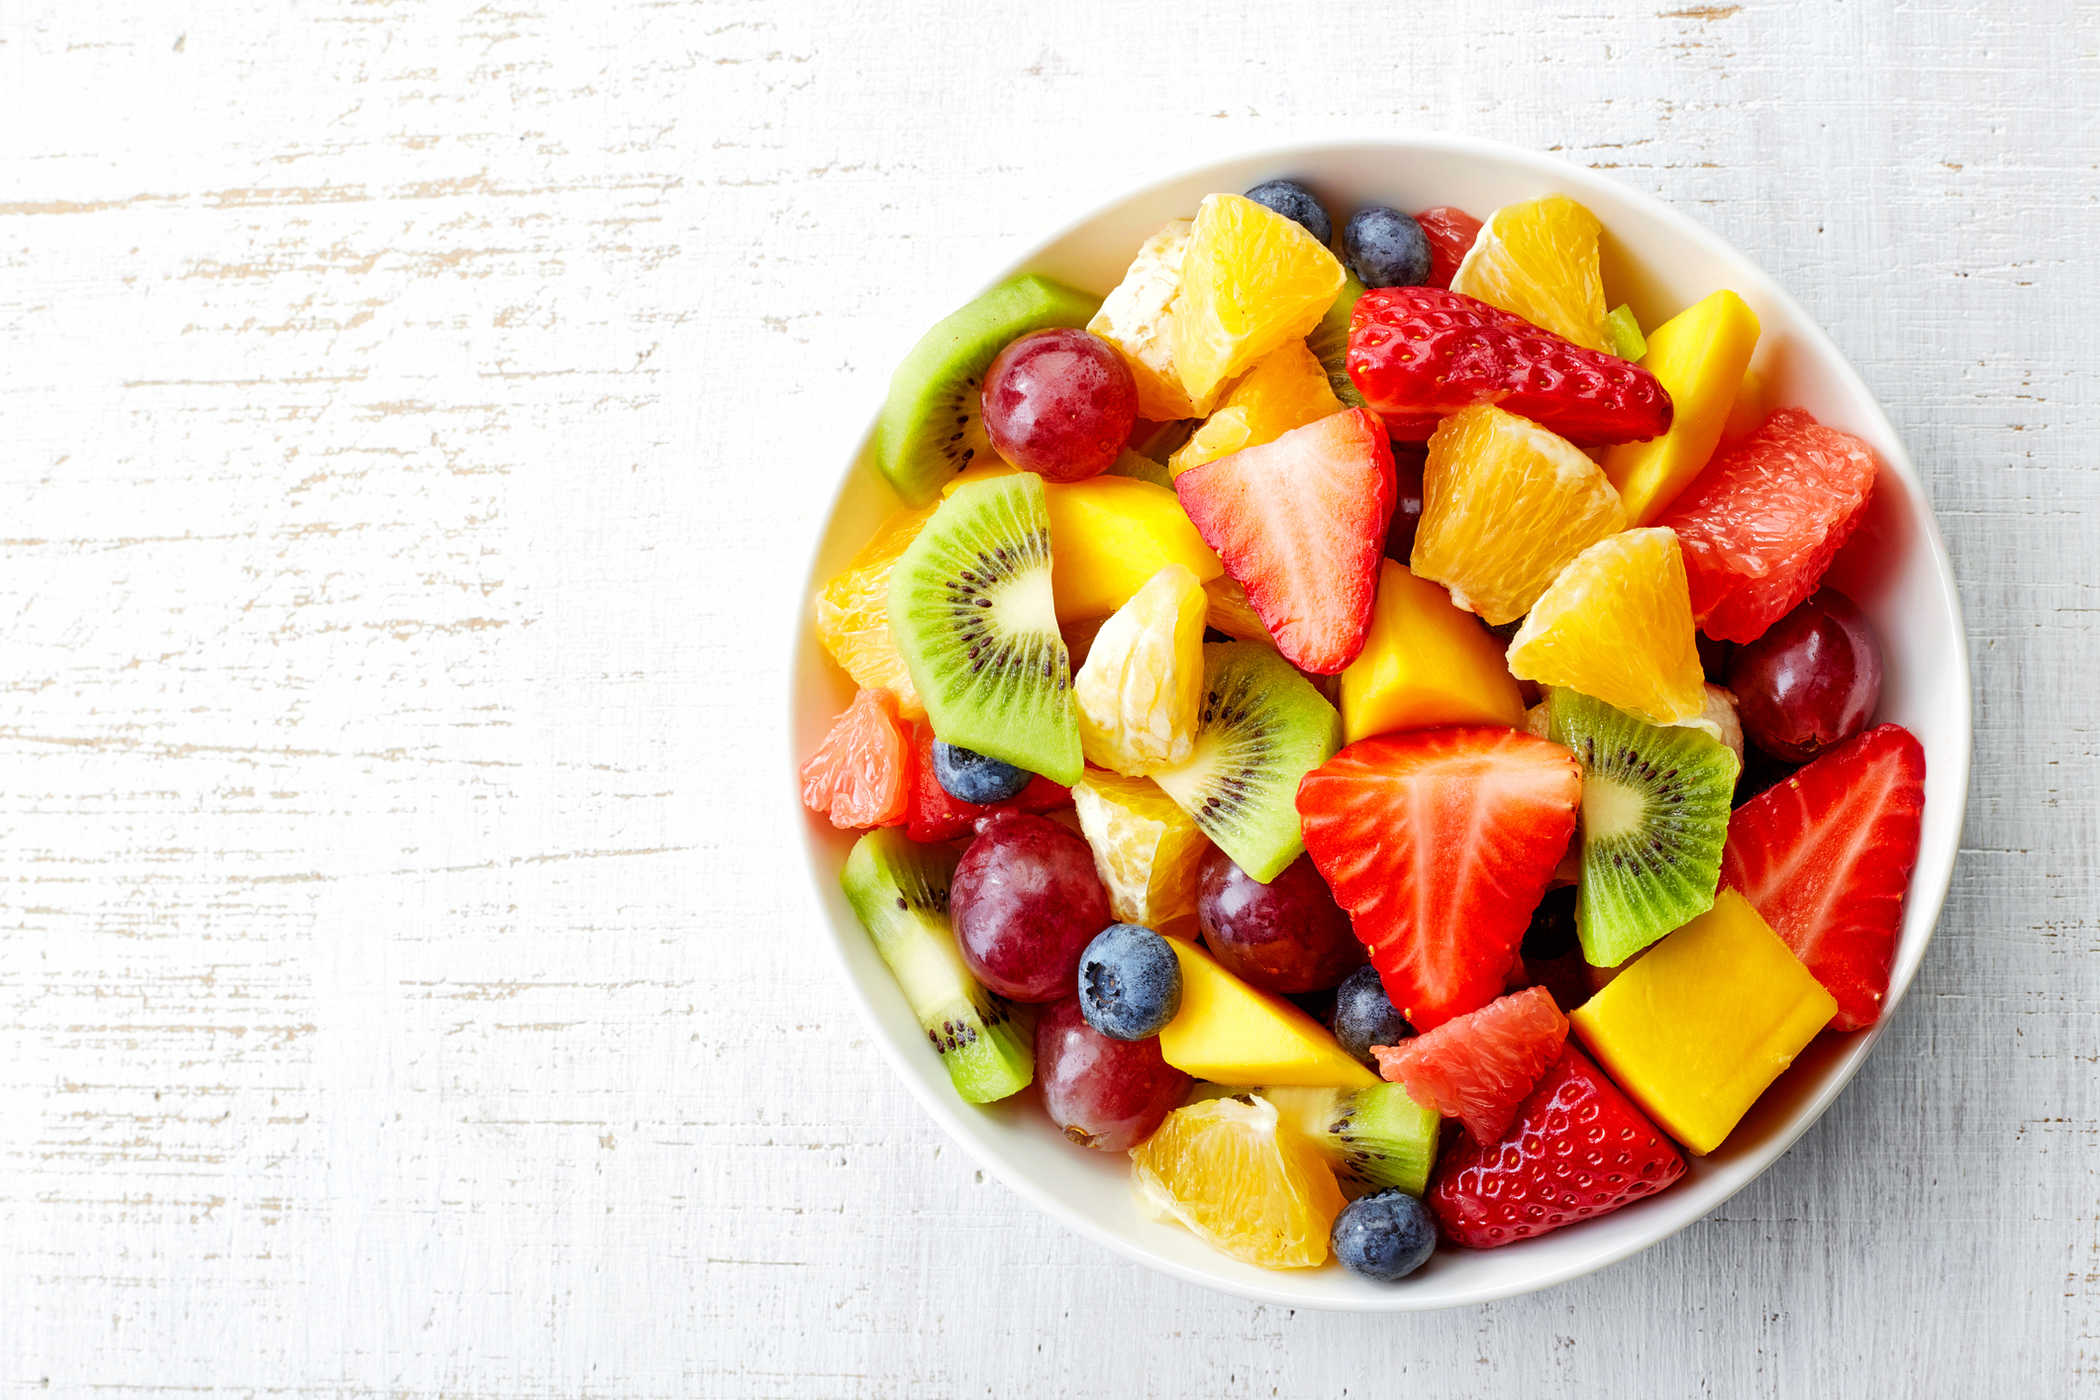 Valgyti šviežius vaisius, siekiant sumažinti diabeto riziką